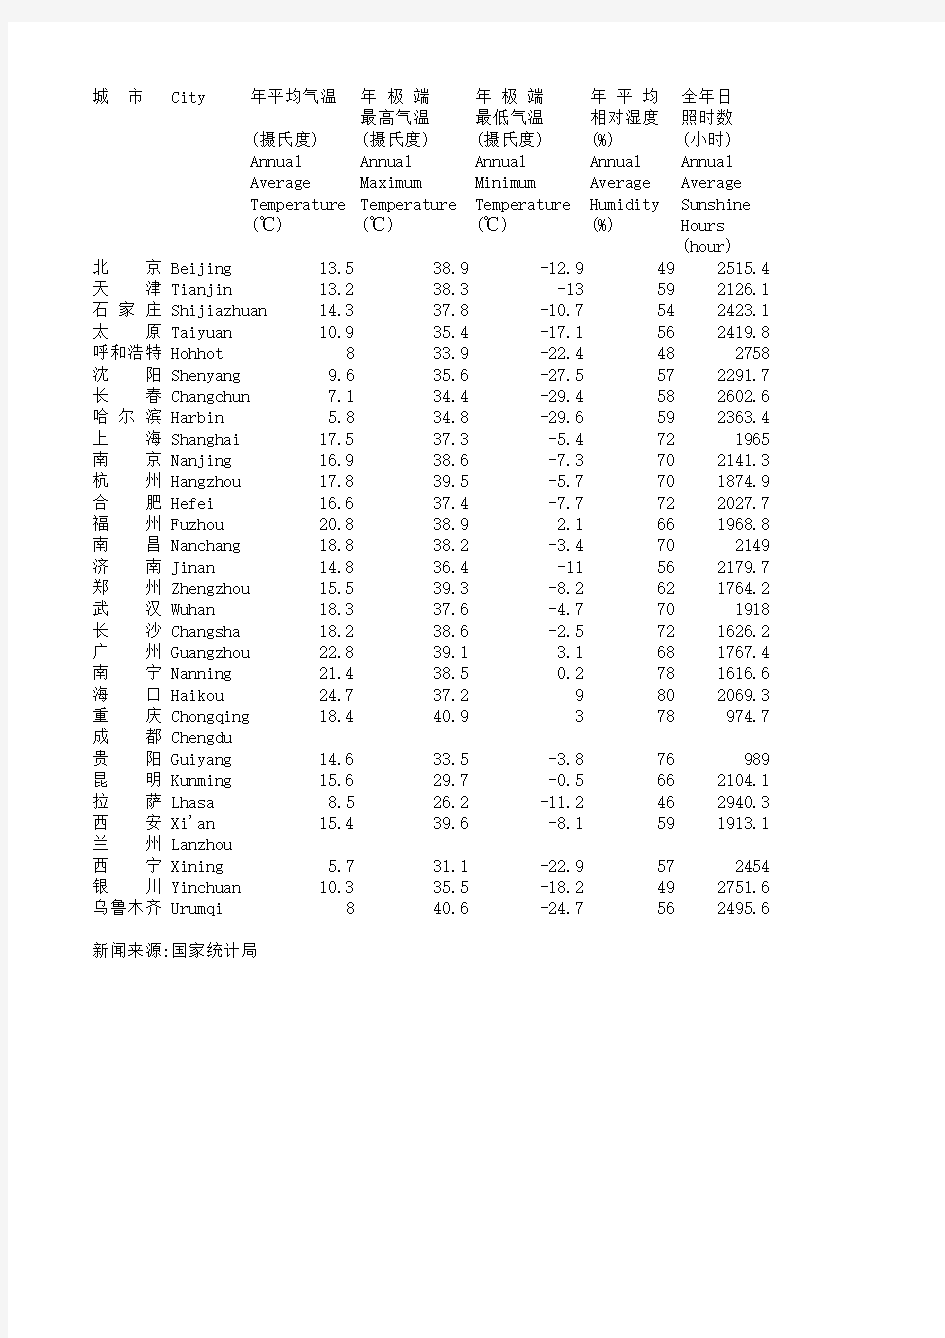 中国环境统计数据—主要城市气候情况(2004年)